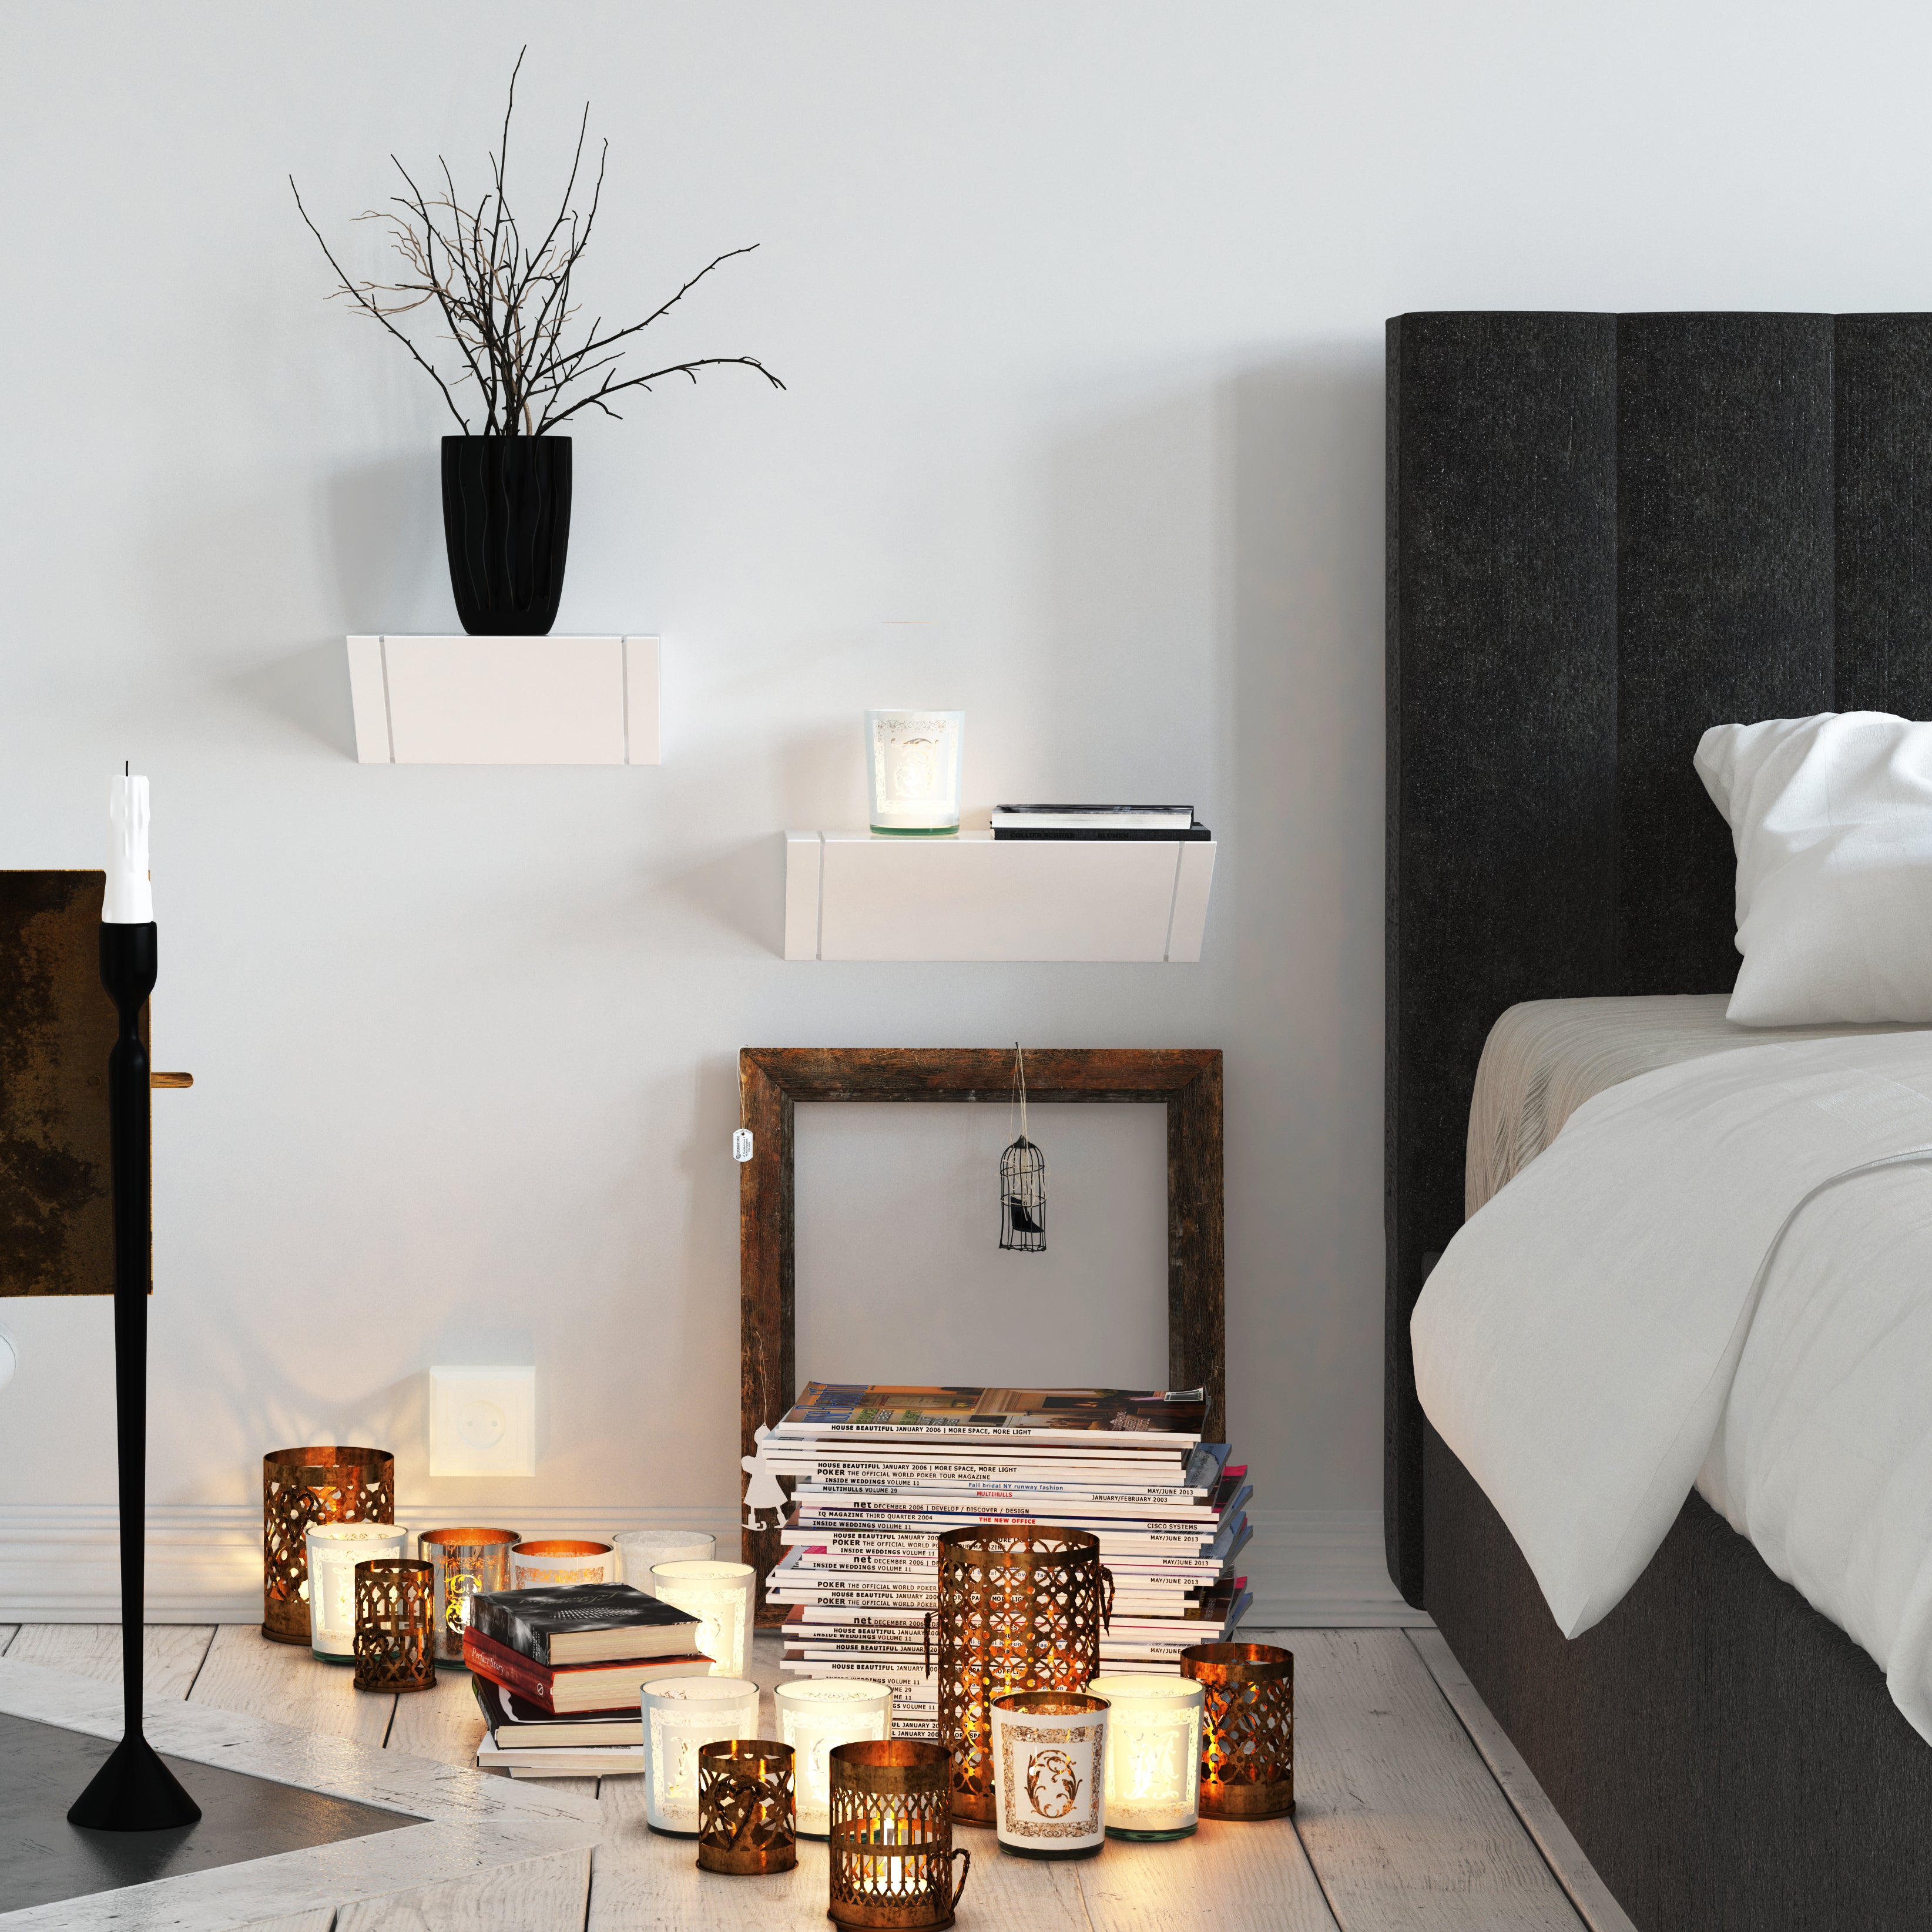 Mye Set of 3 Modern White Floating Shelves – Fytz Design